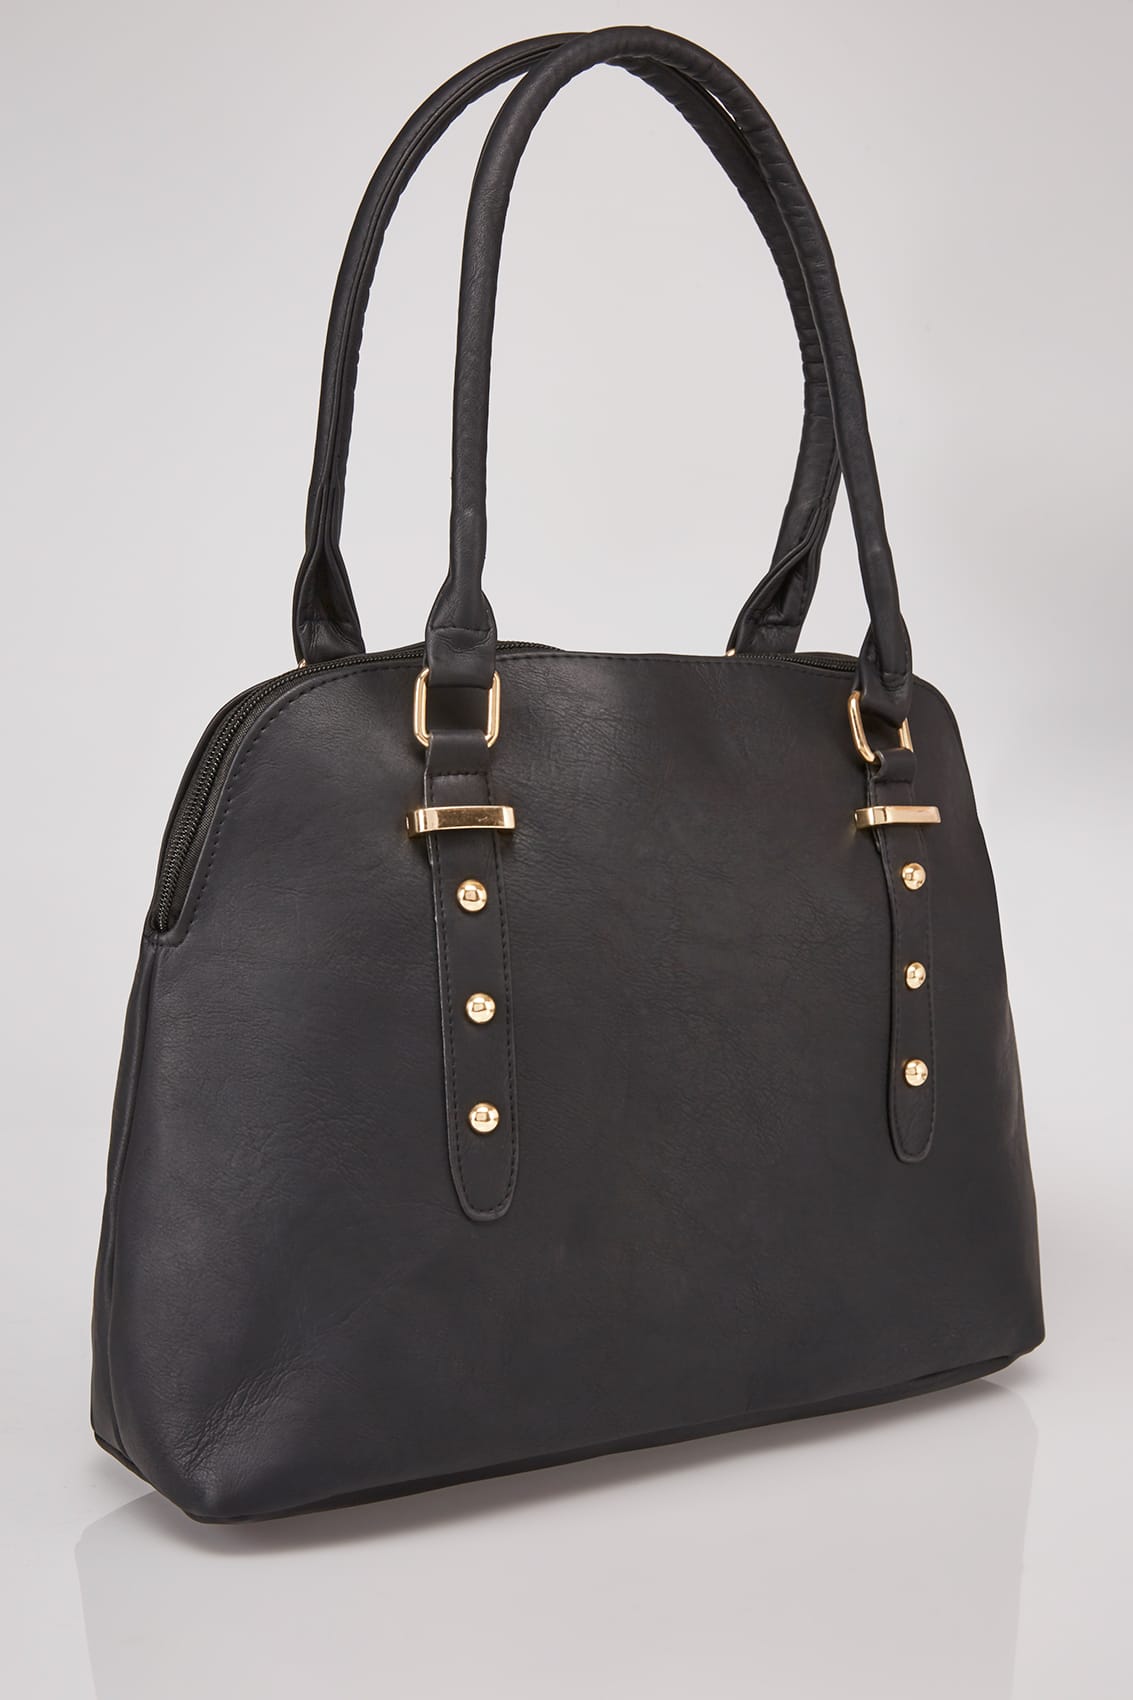 Black Studded Tote Bag With Adjustable Shoulder Strap